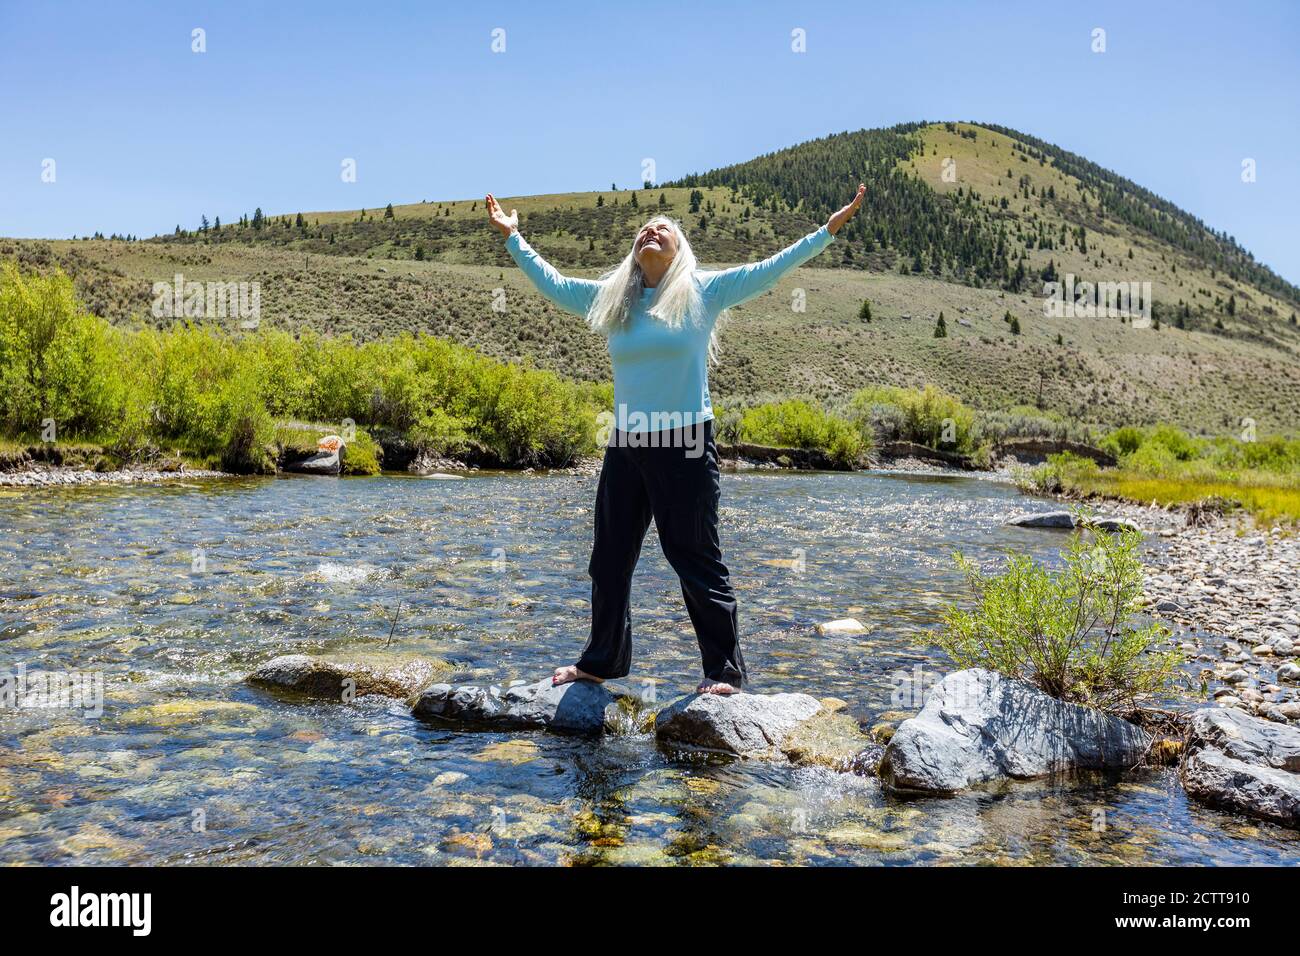 États-Unis, Idaho, Sun Valley, femme avec des armes soulevées debout sur des rochers dans la rivière Banque D'Images